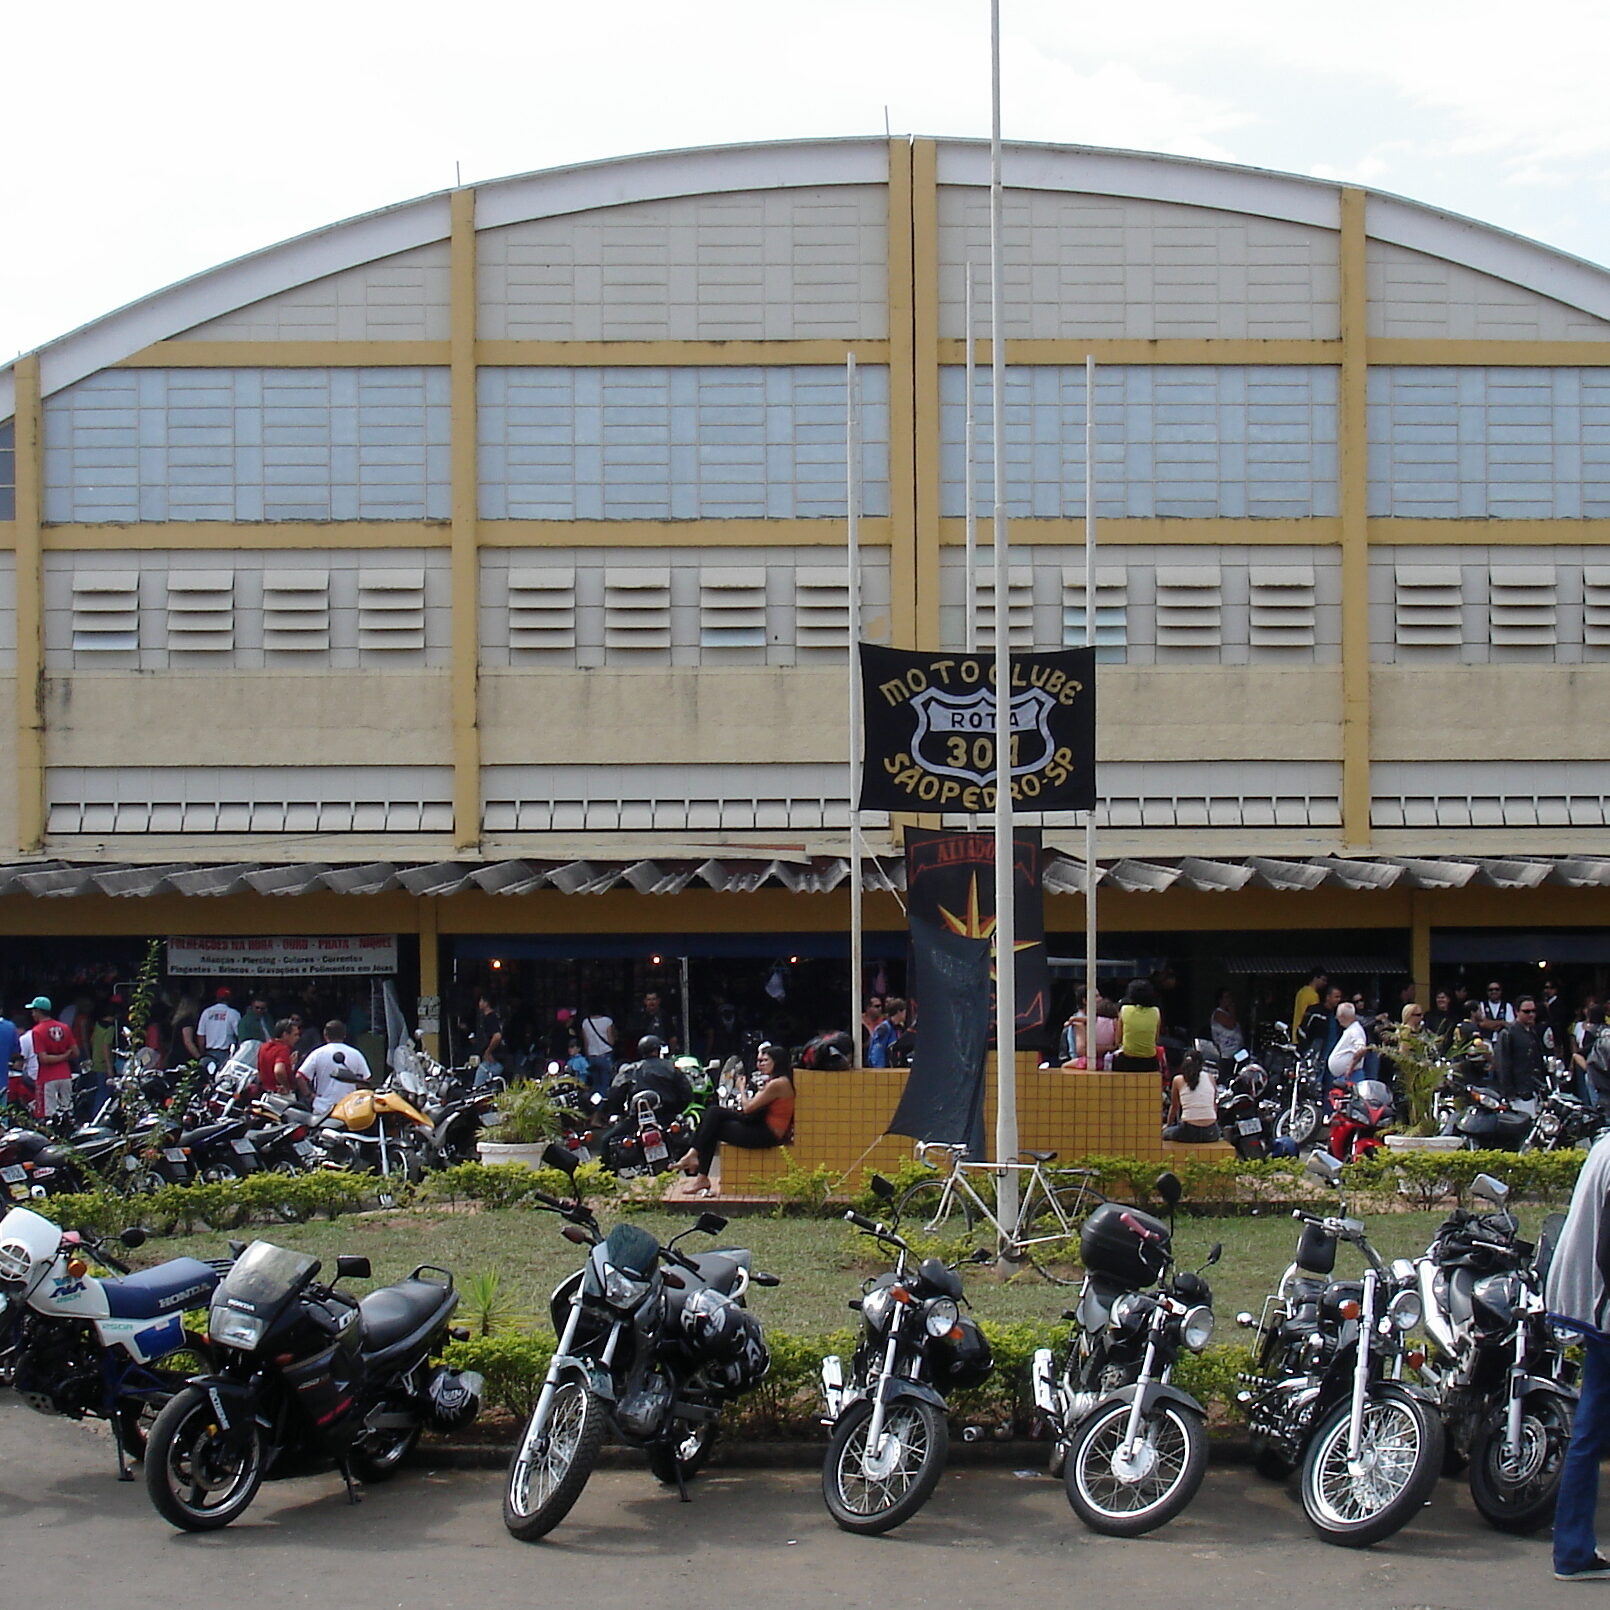 19ª Expo Moto São Pedro acontece nos dias 15, 16 e 17 de julho, no Centro de Eventos, ao lado do Ginásio Bordadão